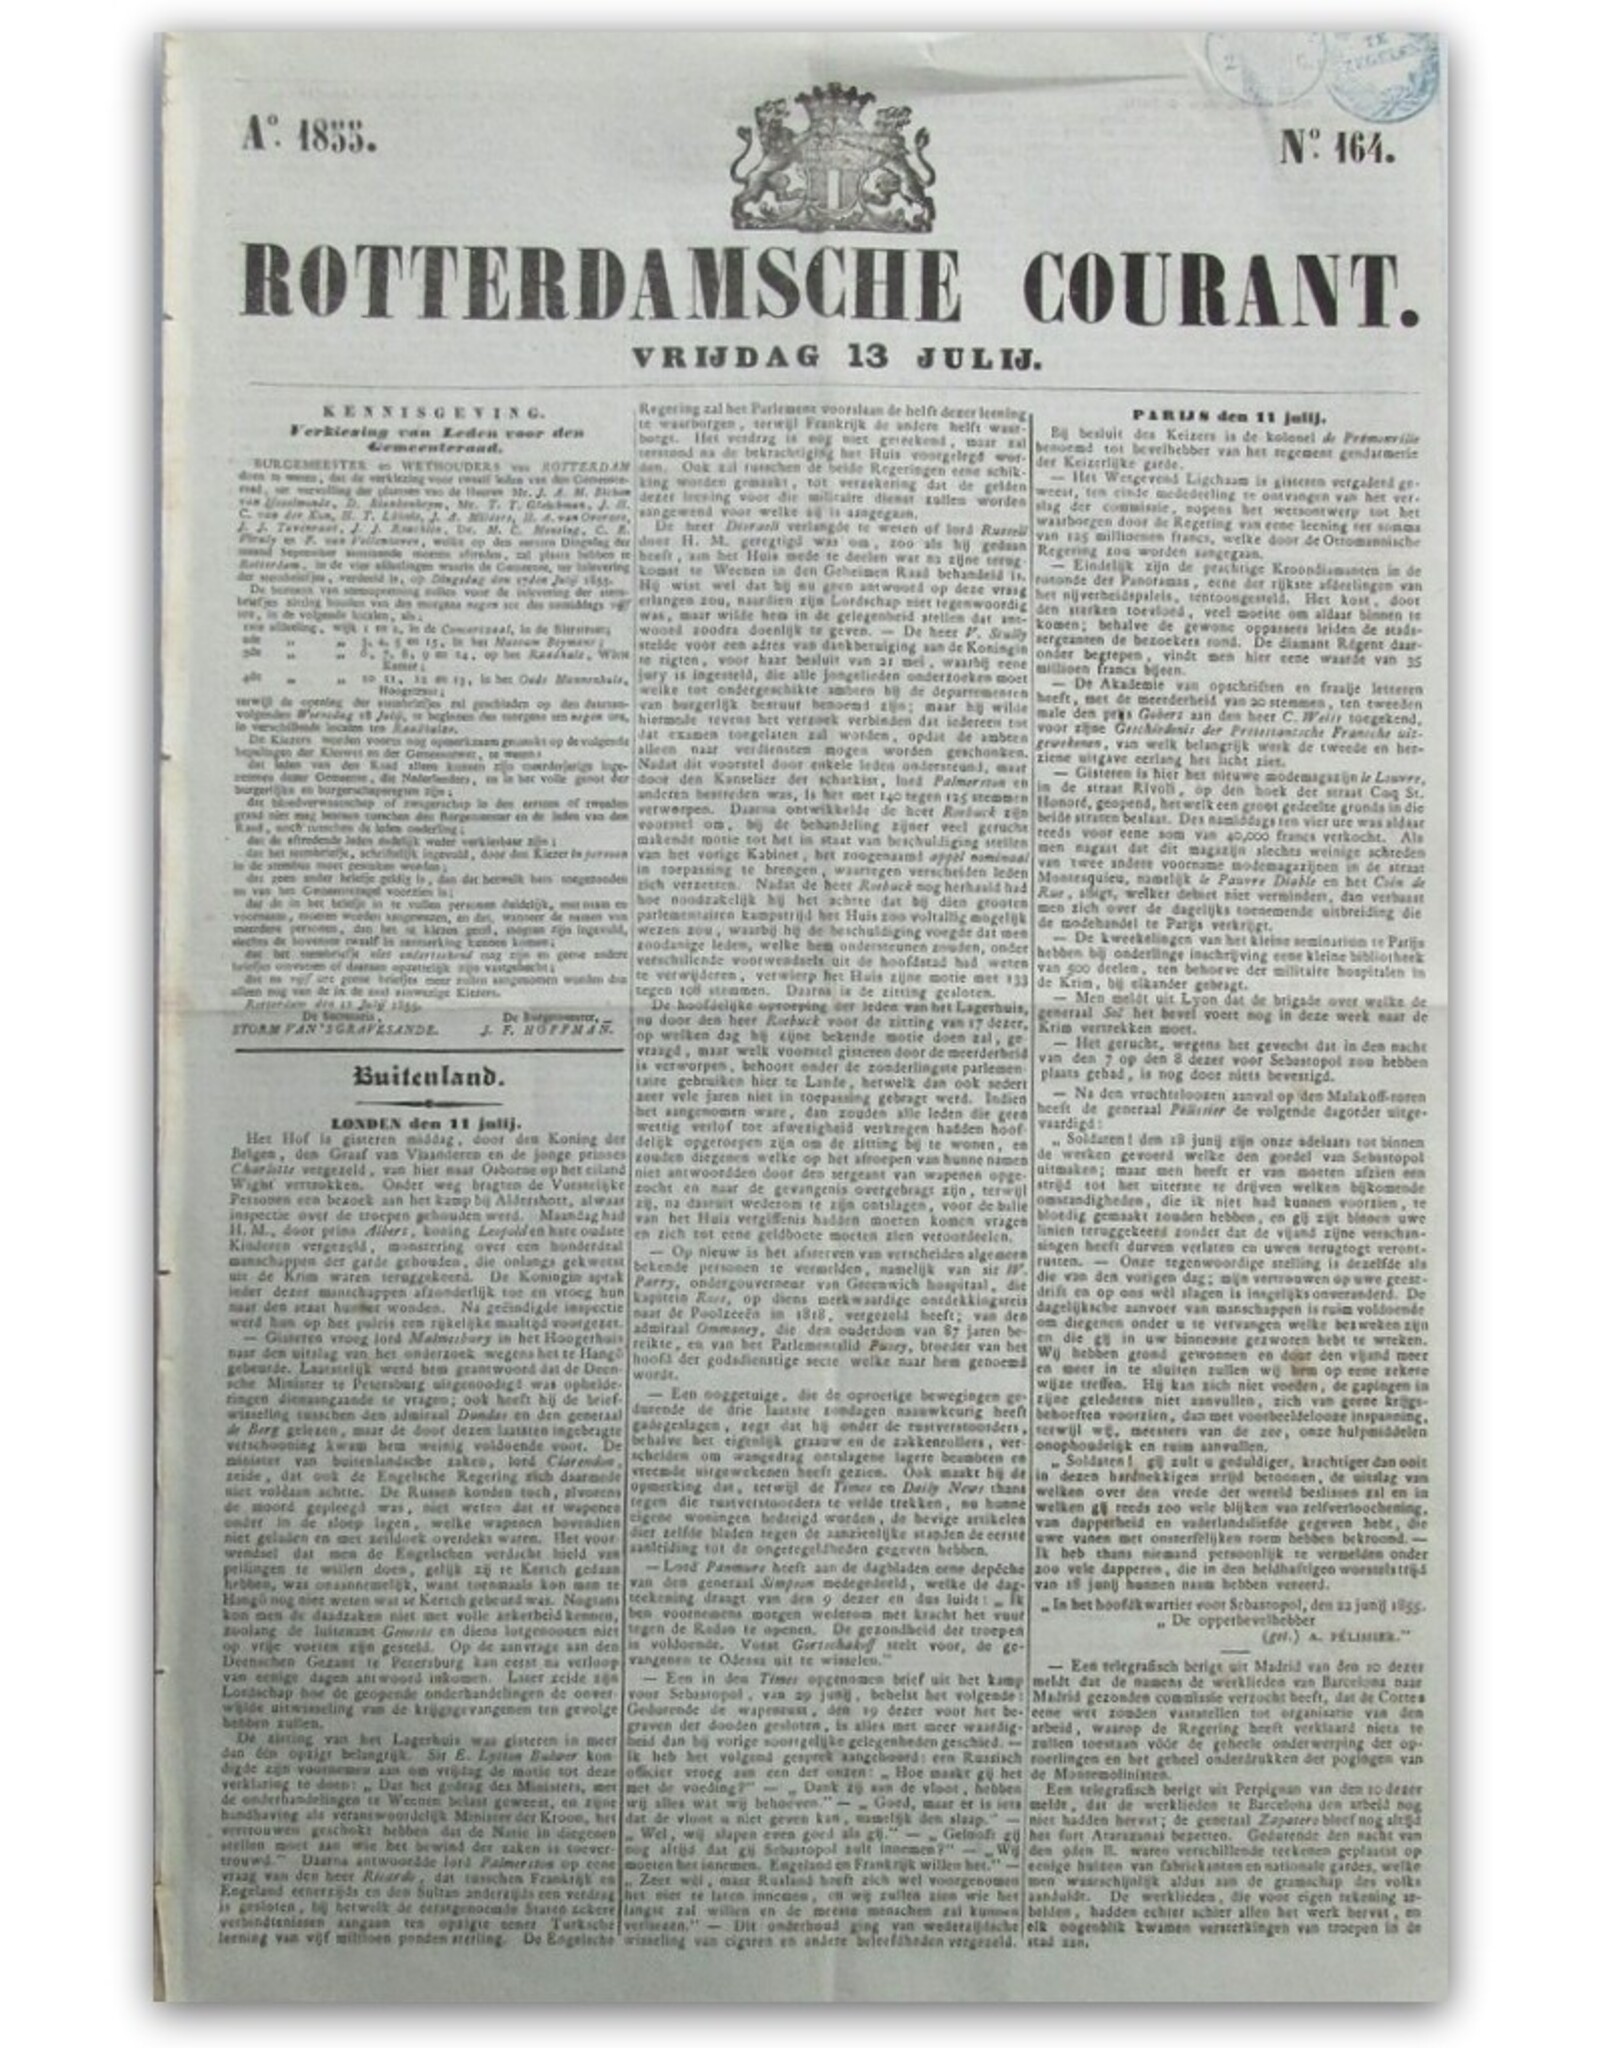 [Reinier & Benjamin Arrenberg] - Rotterdamsche Courant No. 164: Vrijdag 13 Julij